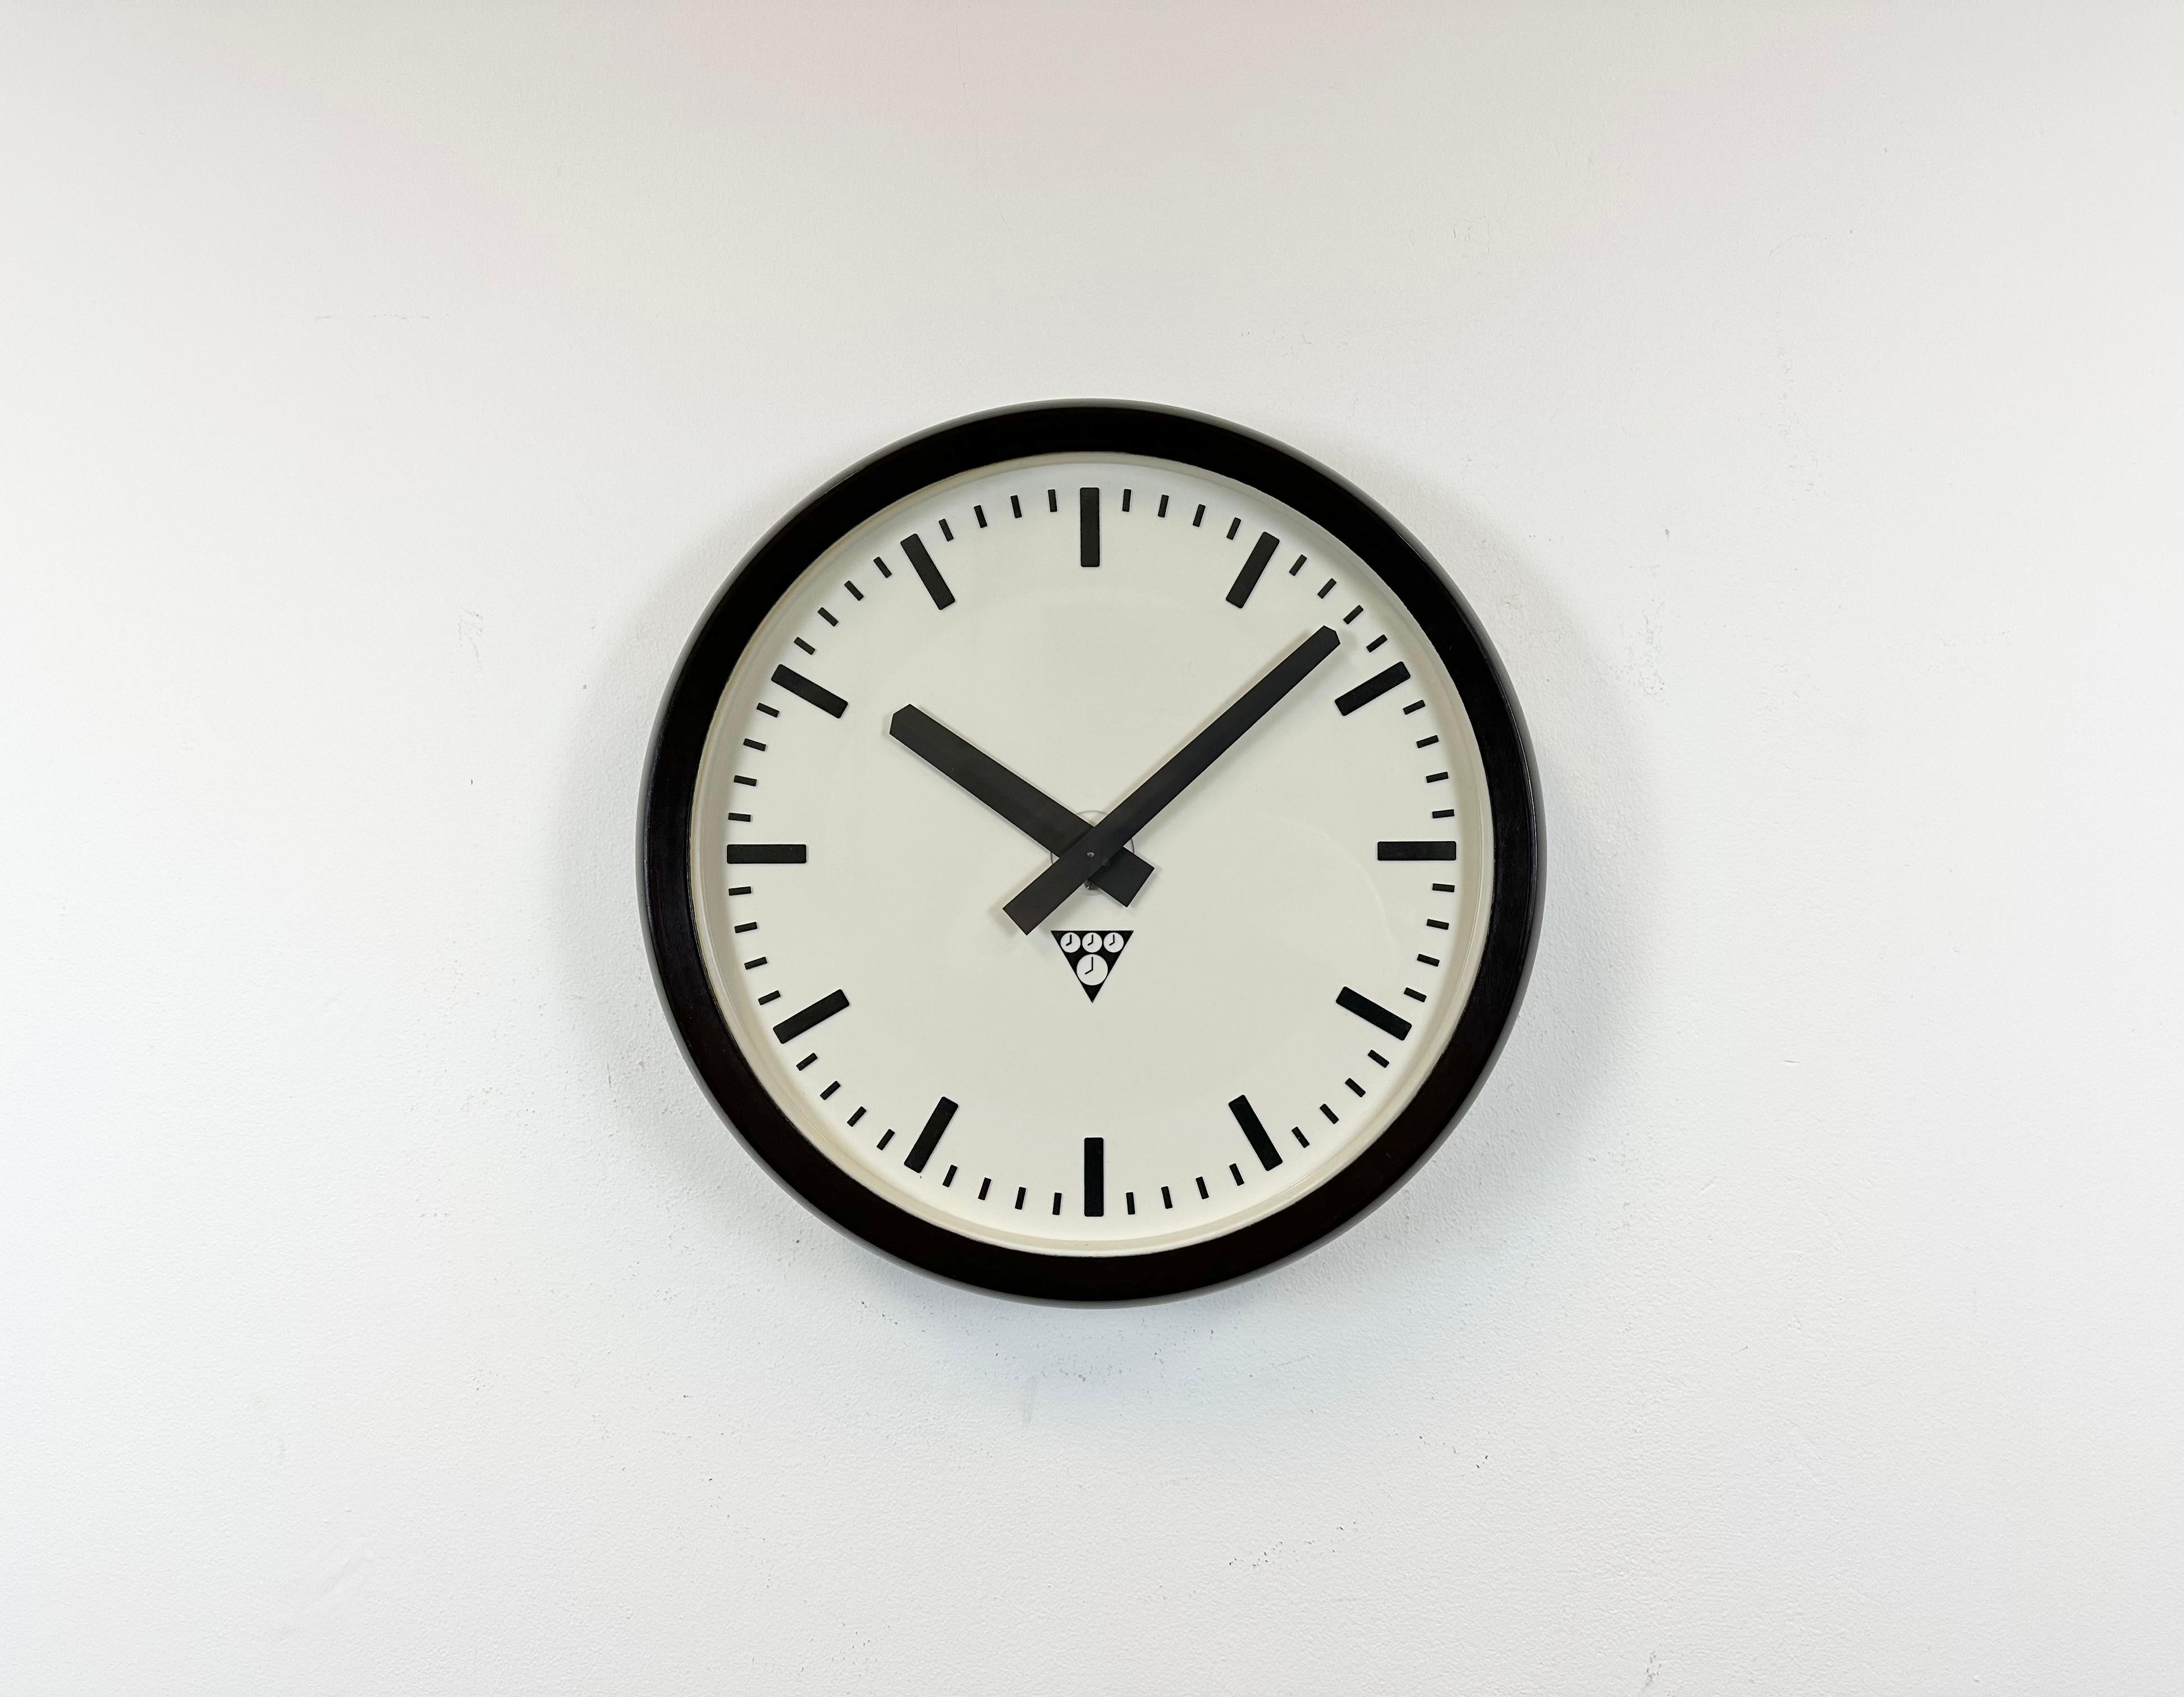 Diese Wanduhr wurde von Pragotron in der ehemaligen Tschechoslowakei in den 1970er Jahren hergestellt. Die Uhr hat einen Rahmen aus braunem Bakelit, ein weißes Bakelit-Zifferblatt, Aluminiumzeiger und eine Abdeckung aus Klarglas. Das Stück wurde in